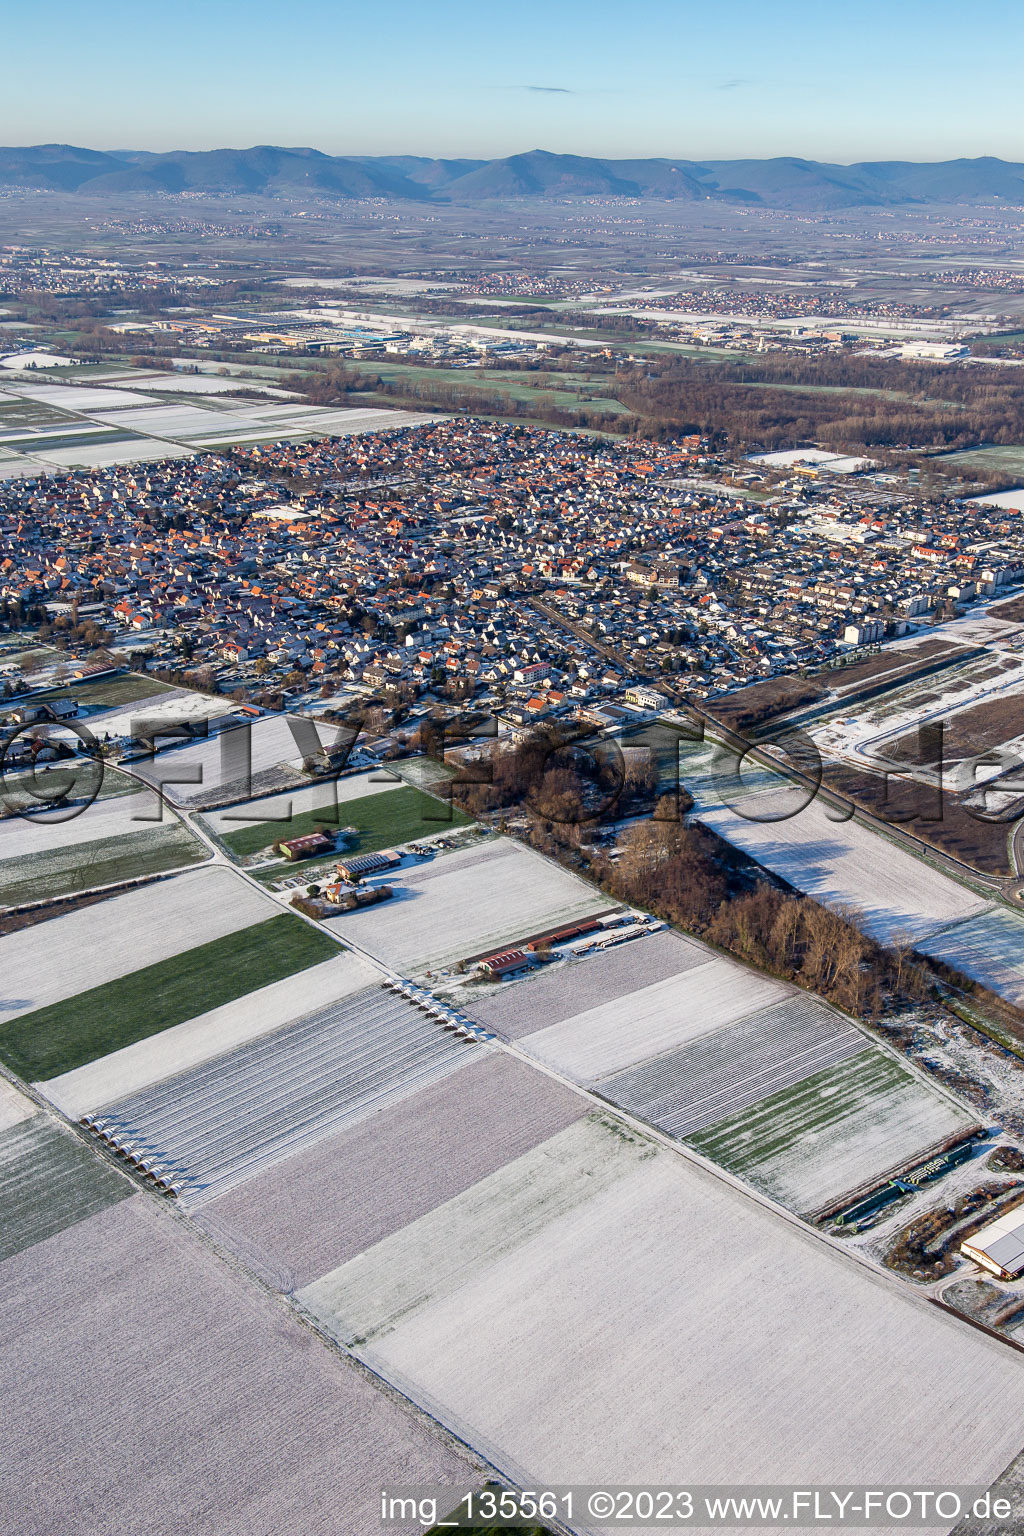 Vue aérienne de Du sud-est en hiver quand il y a de la neige à Offenbach an der Queich dans le département Rhénanie-Palatinat, Allemagne